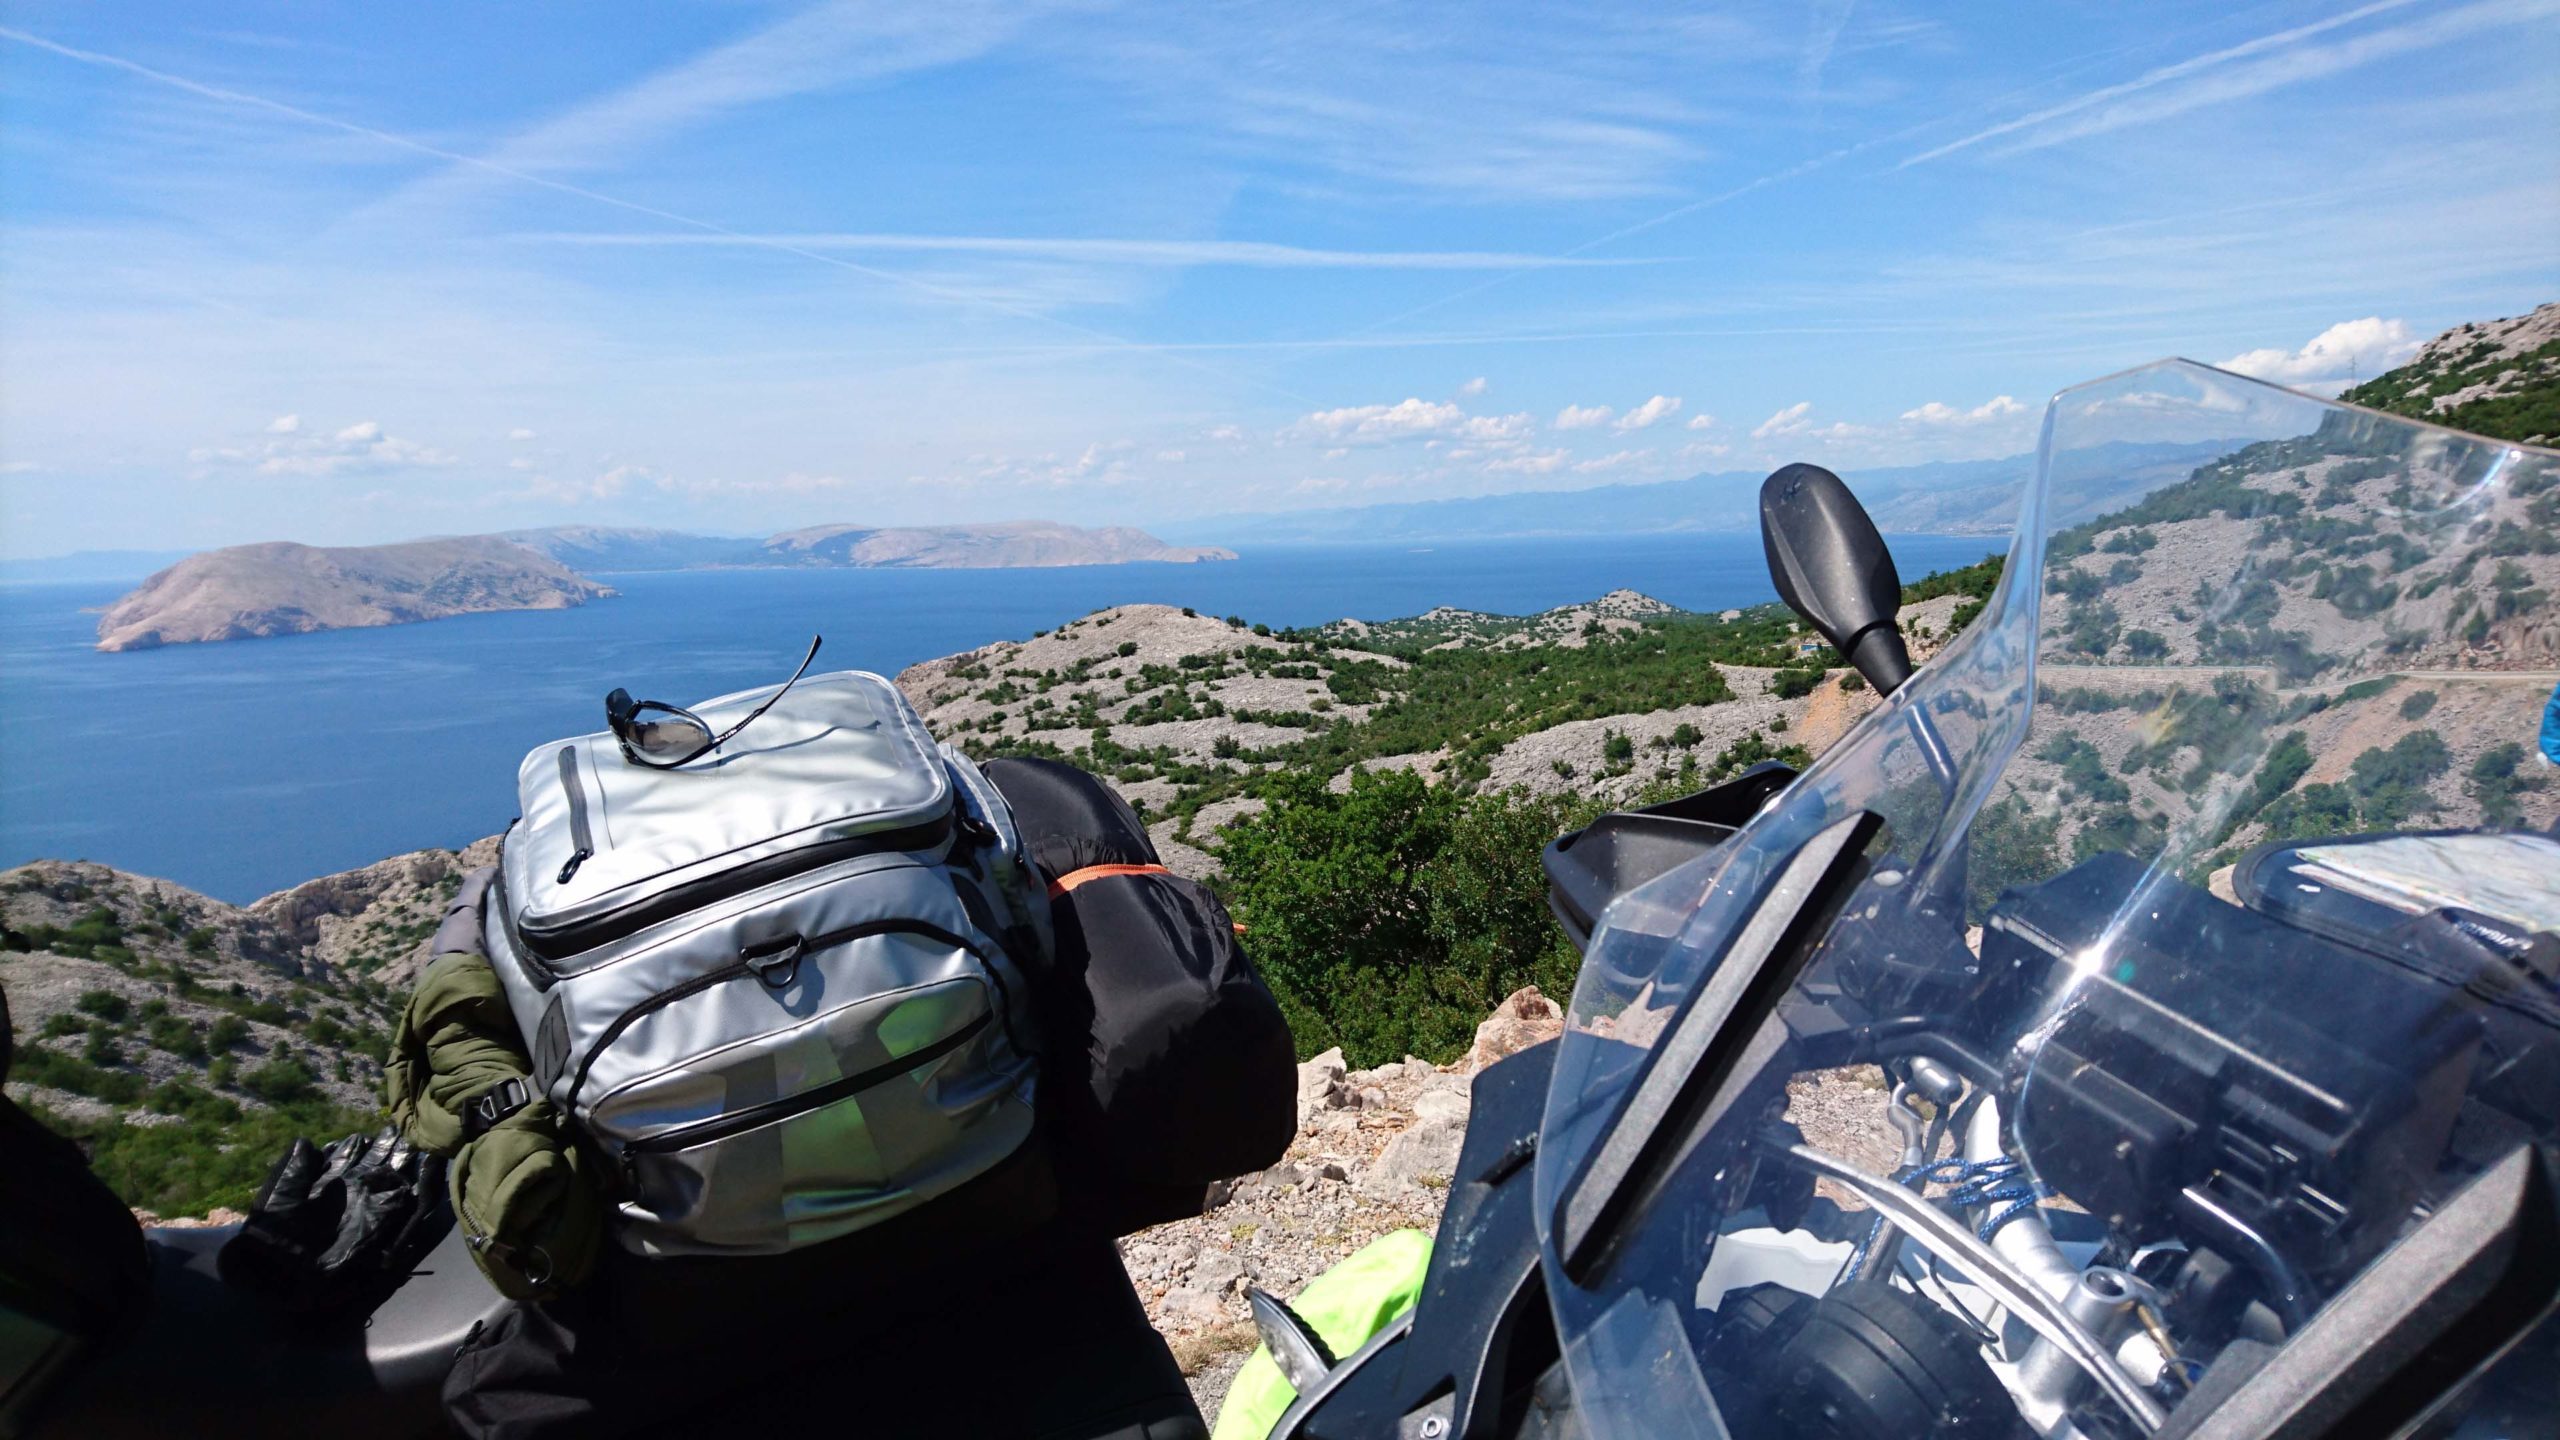 European motorcycle tour Croatia & Dalmatian coast near Zadar